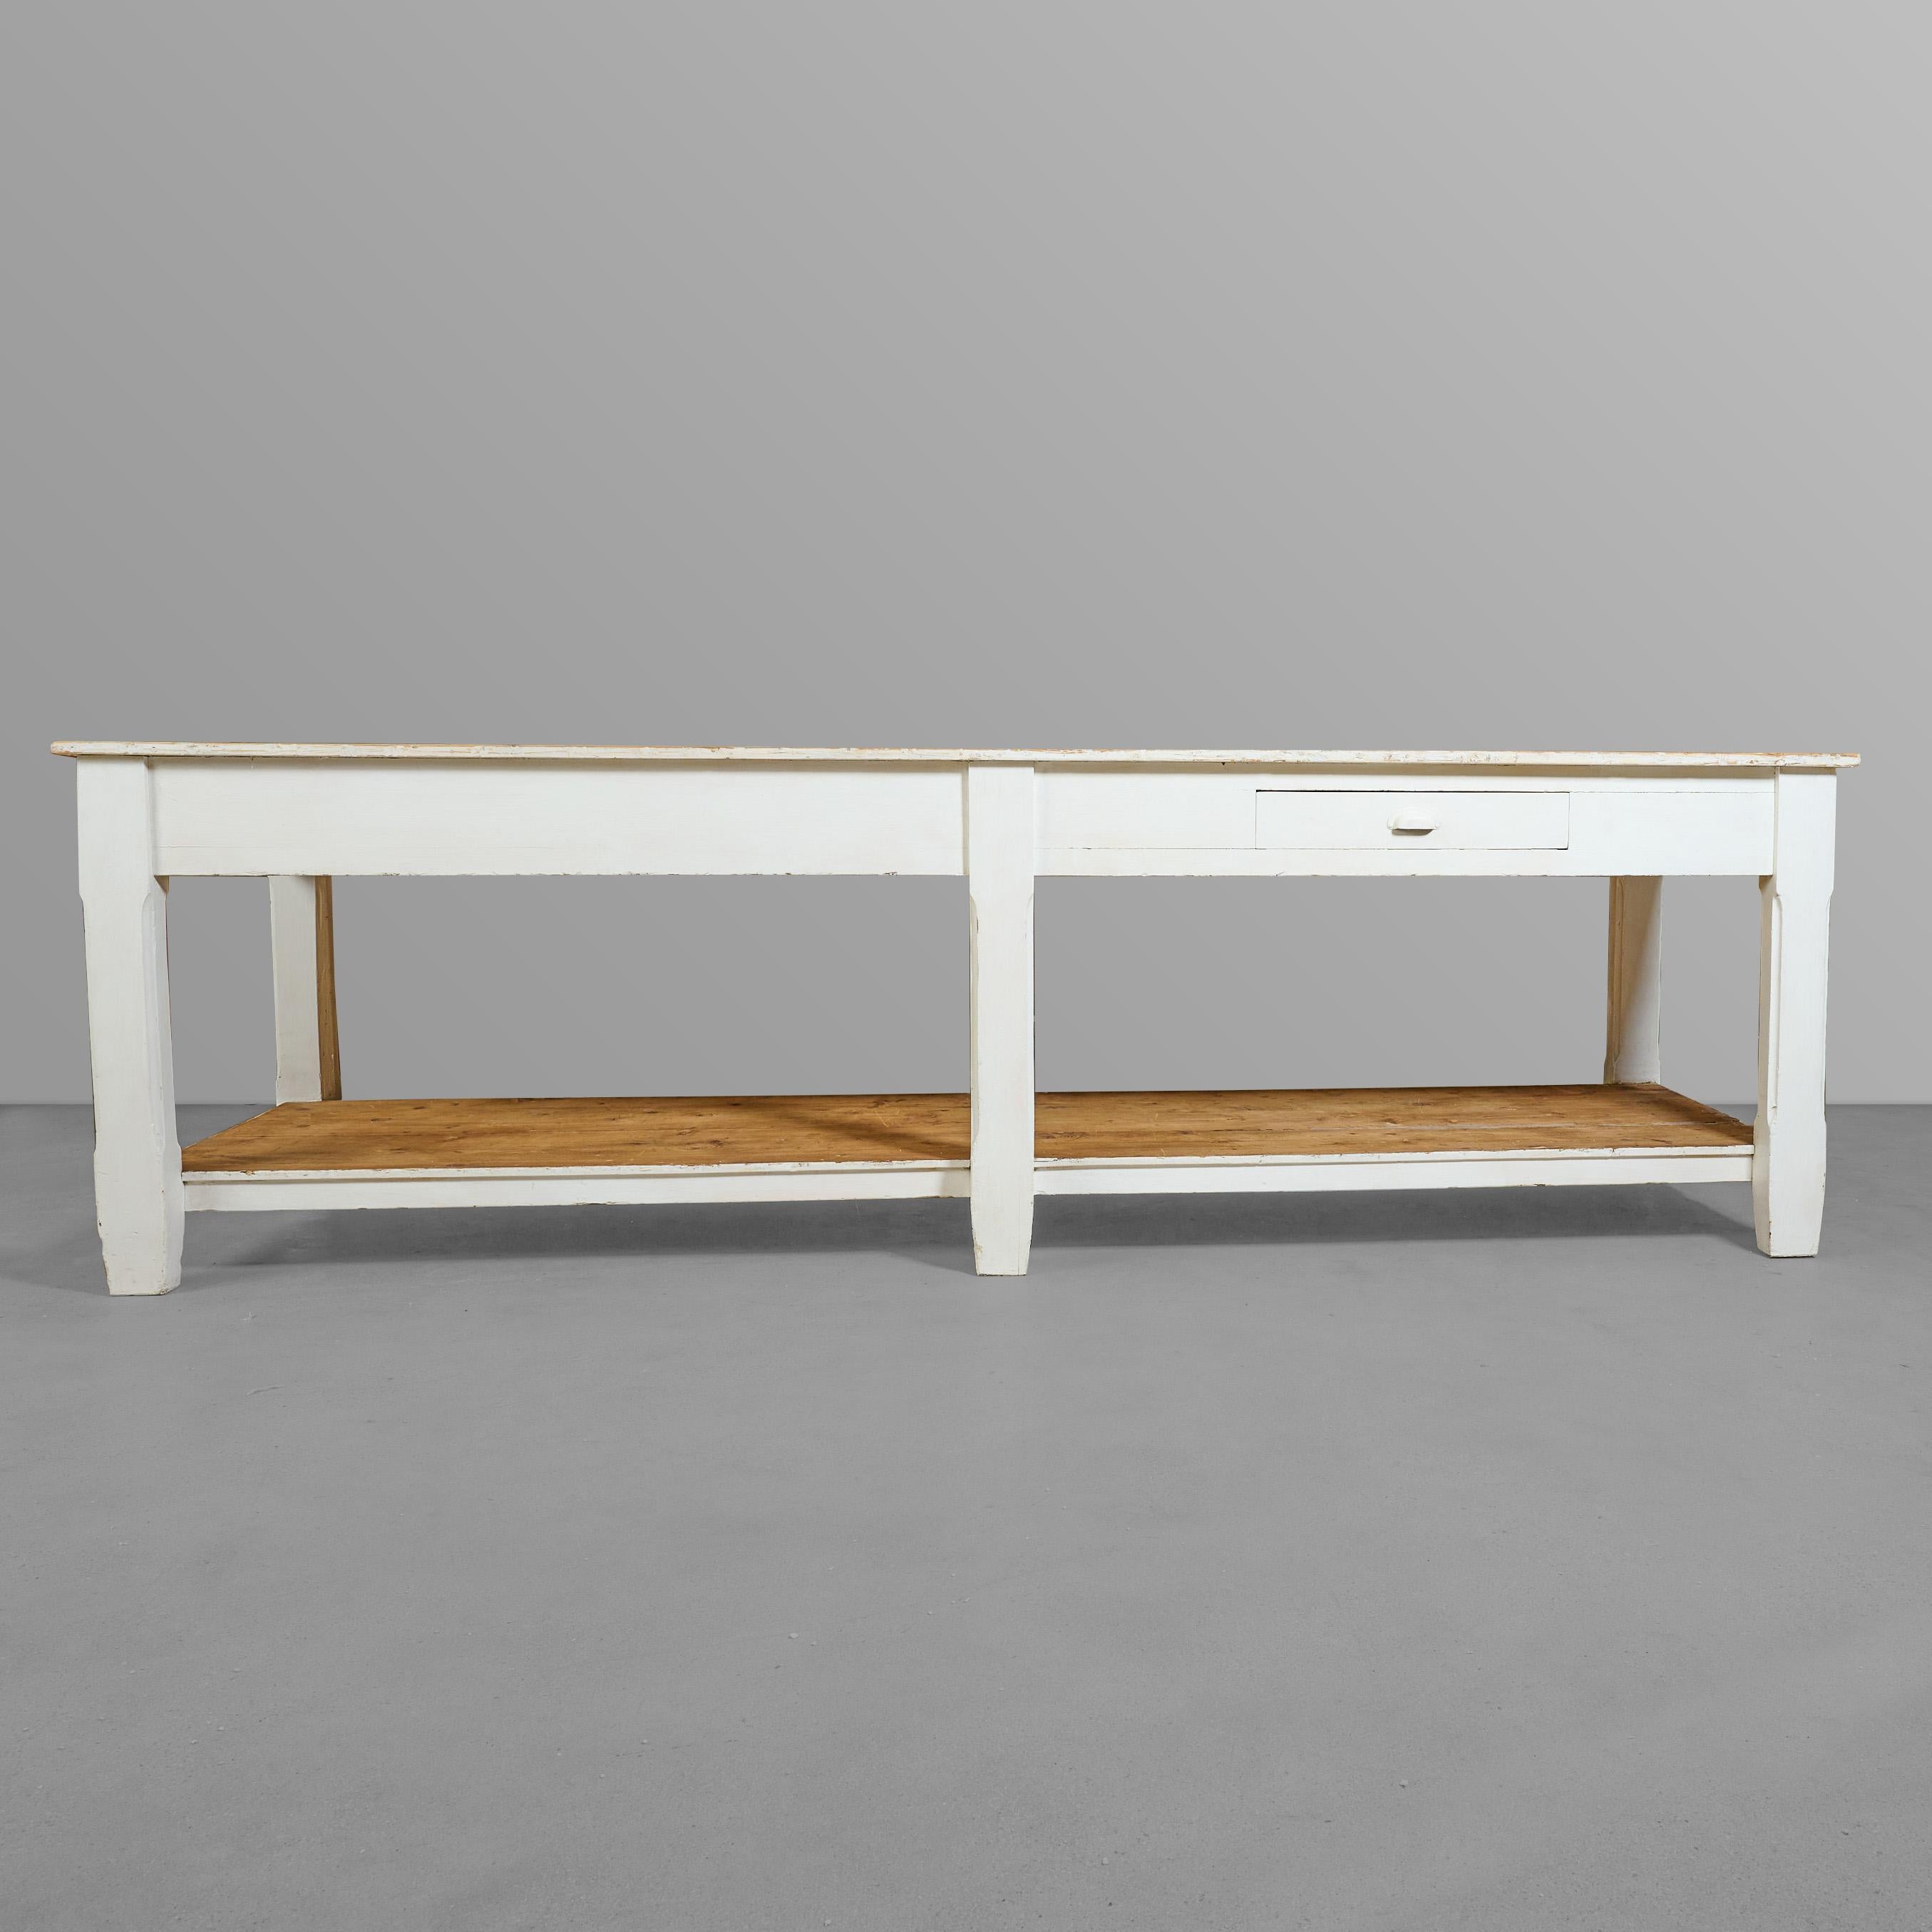 Merveilleuse table de tailleur à six pieds avec étagère inférieure et deux tiroirs. Magnifique étagère supérieure et inférieure non peinte.